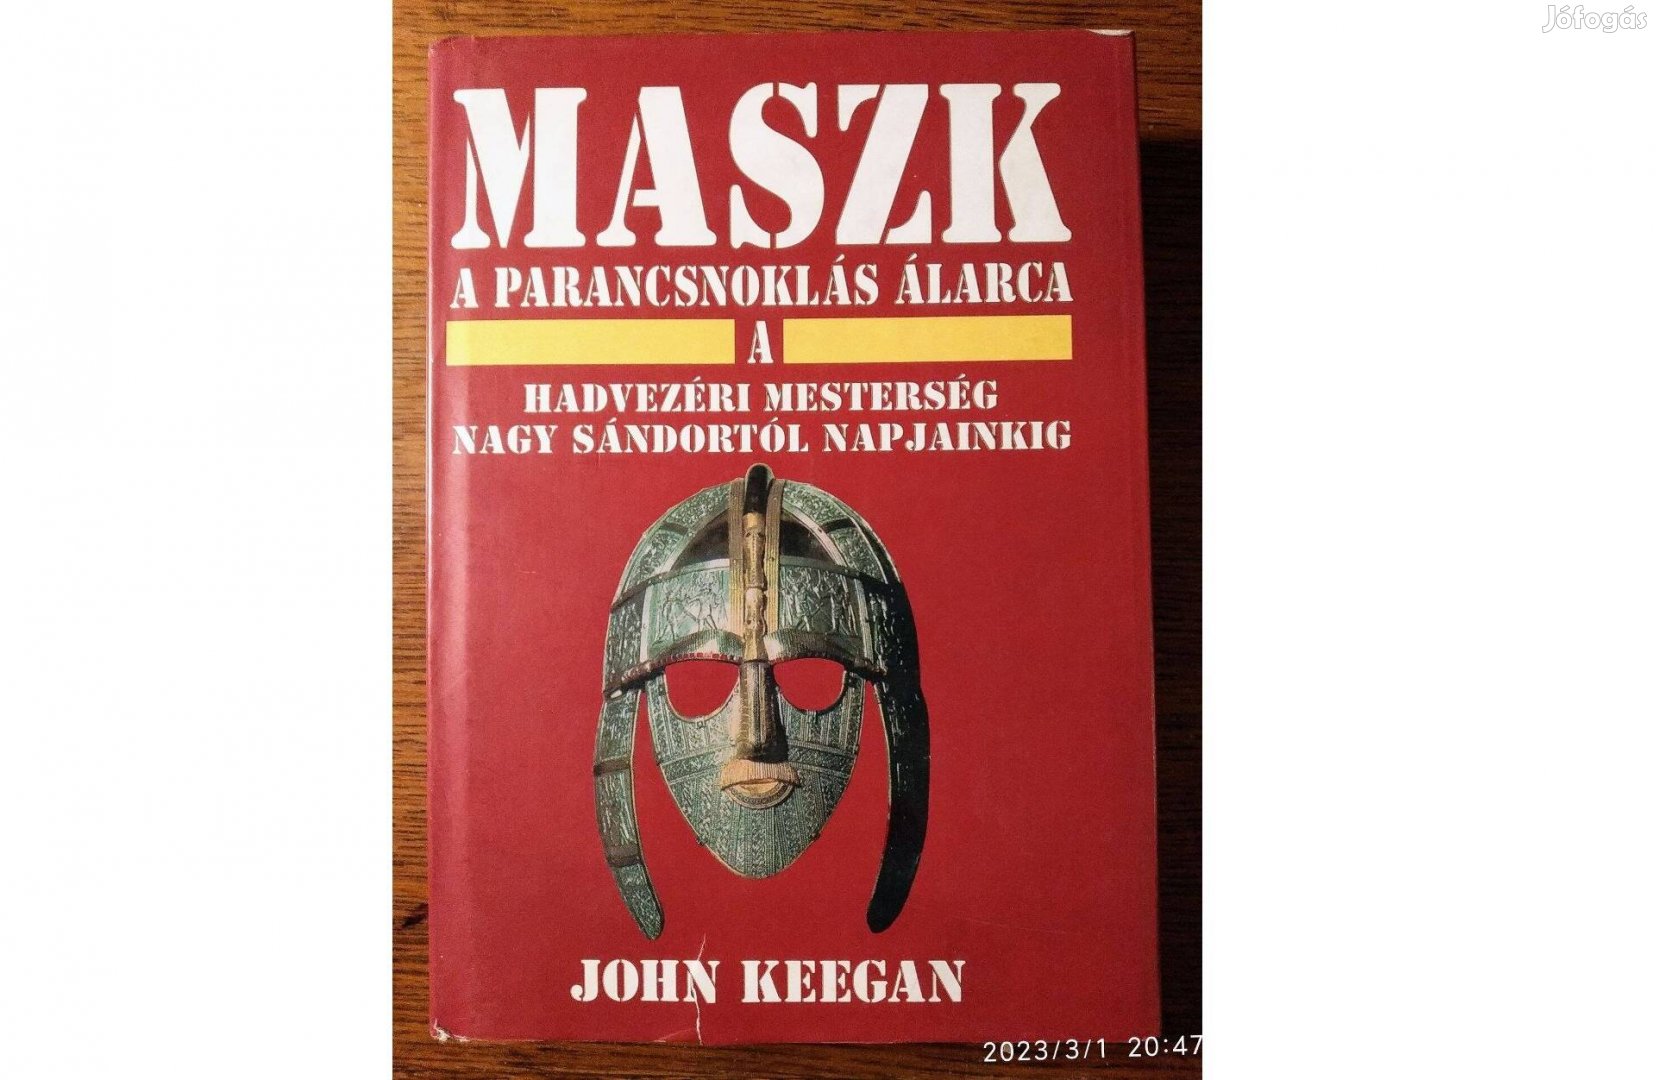 Maszk - A parancsnoklás álarca (A hadvezéri mesterség John Keegan